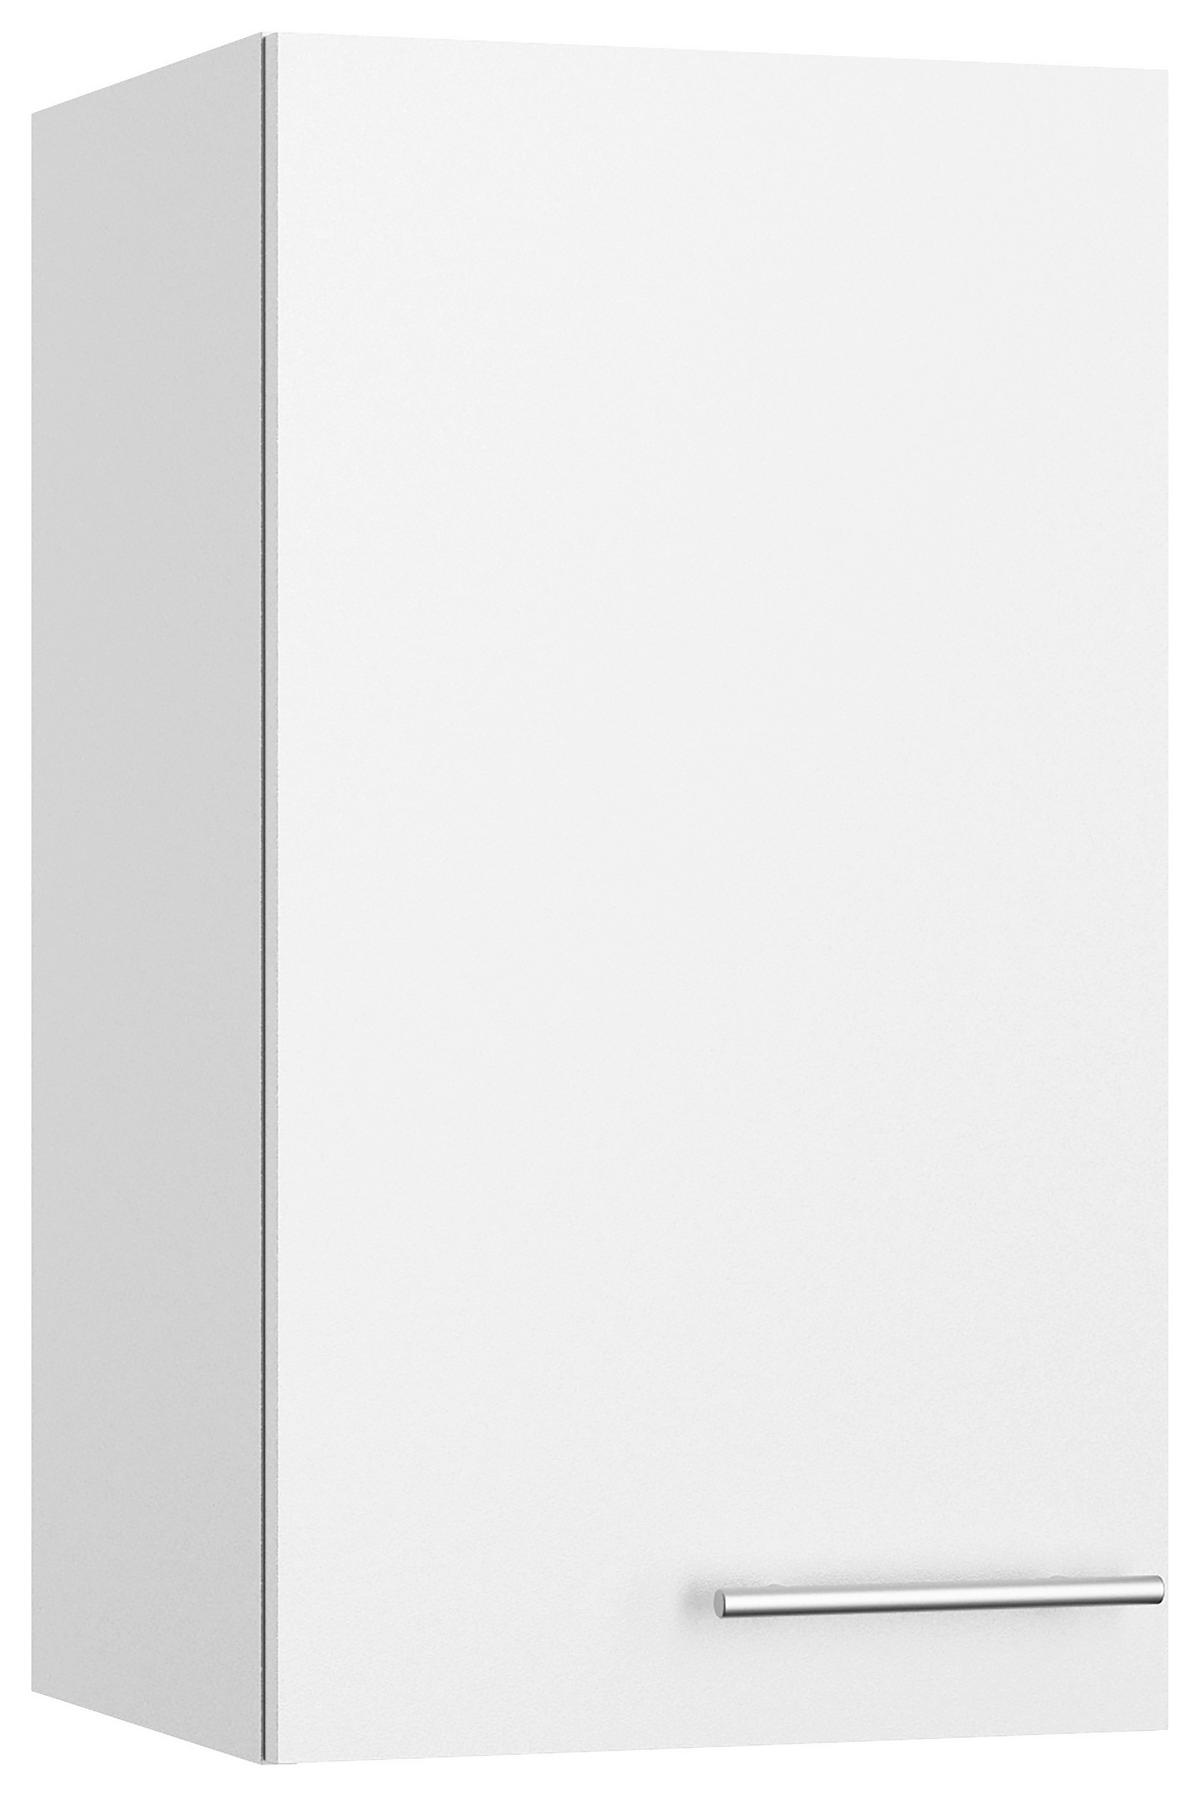 KÜCHENBLOCK 270 cm   in Weiß  - Edelstahlfarben/Anthrazit, Basics, Holzwerkstoff/Metall (270cm) - Optifit